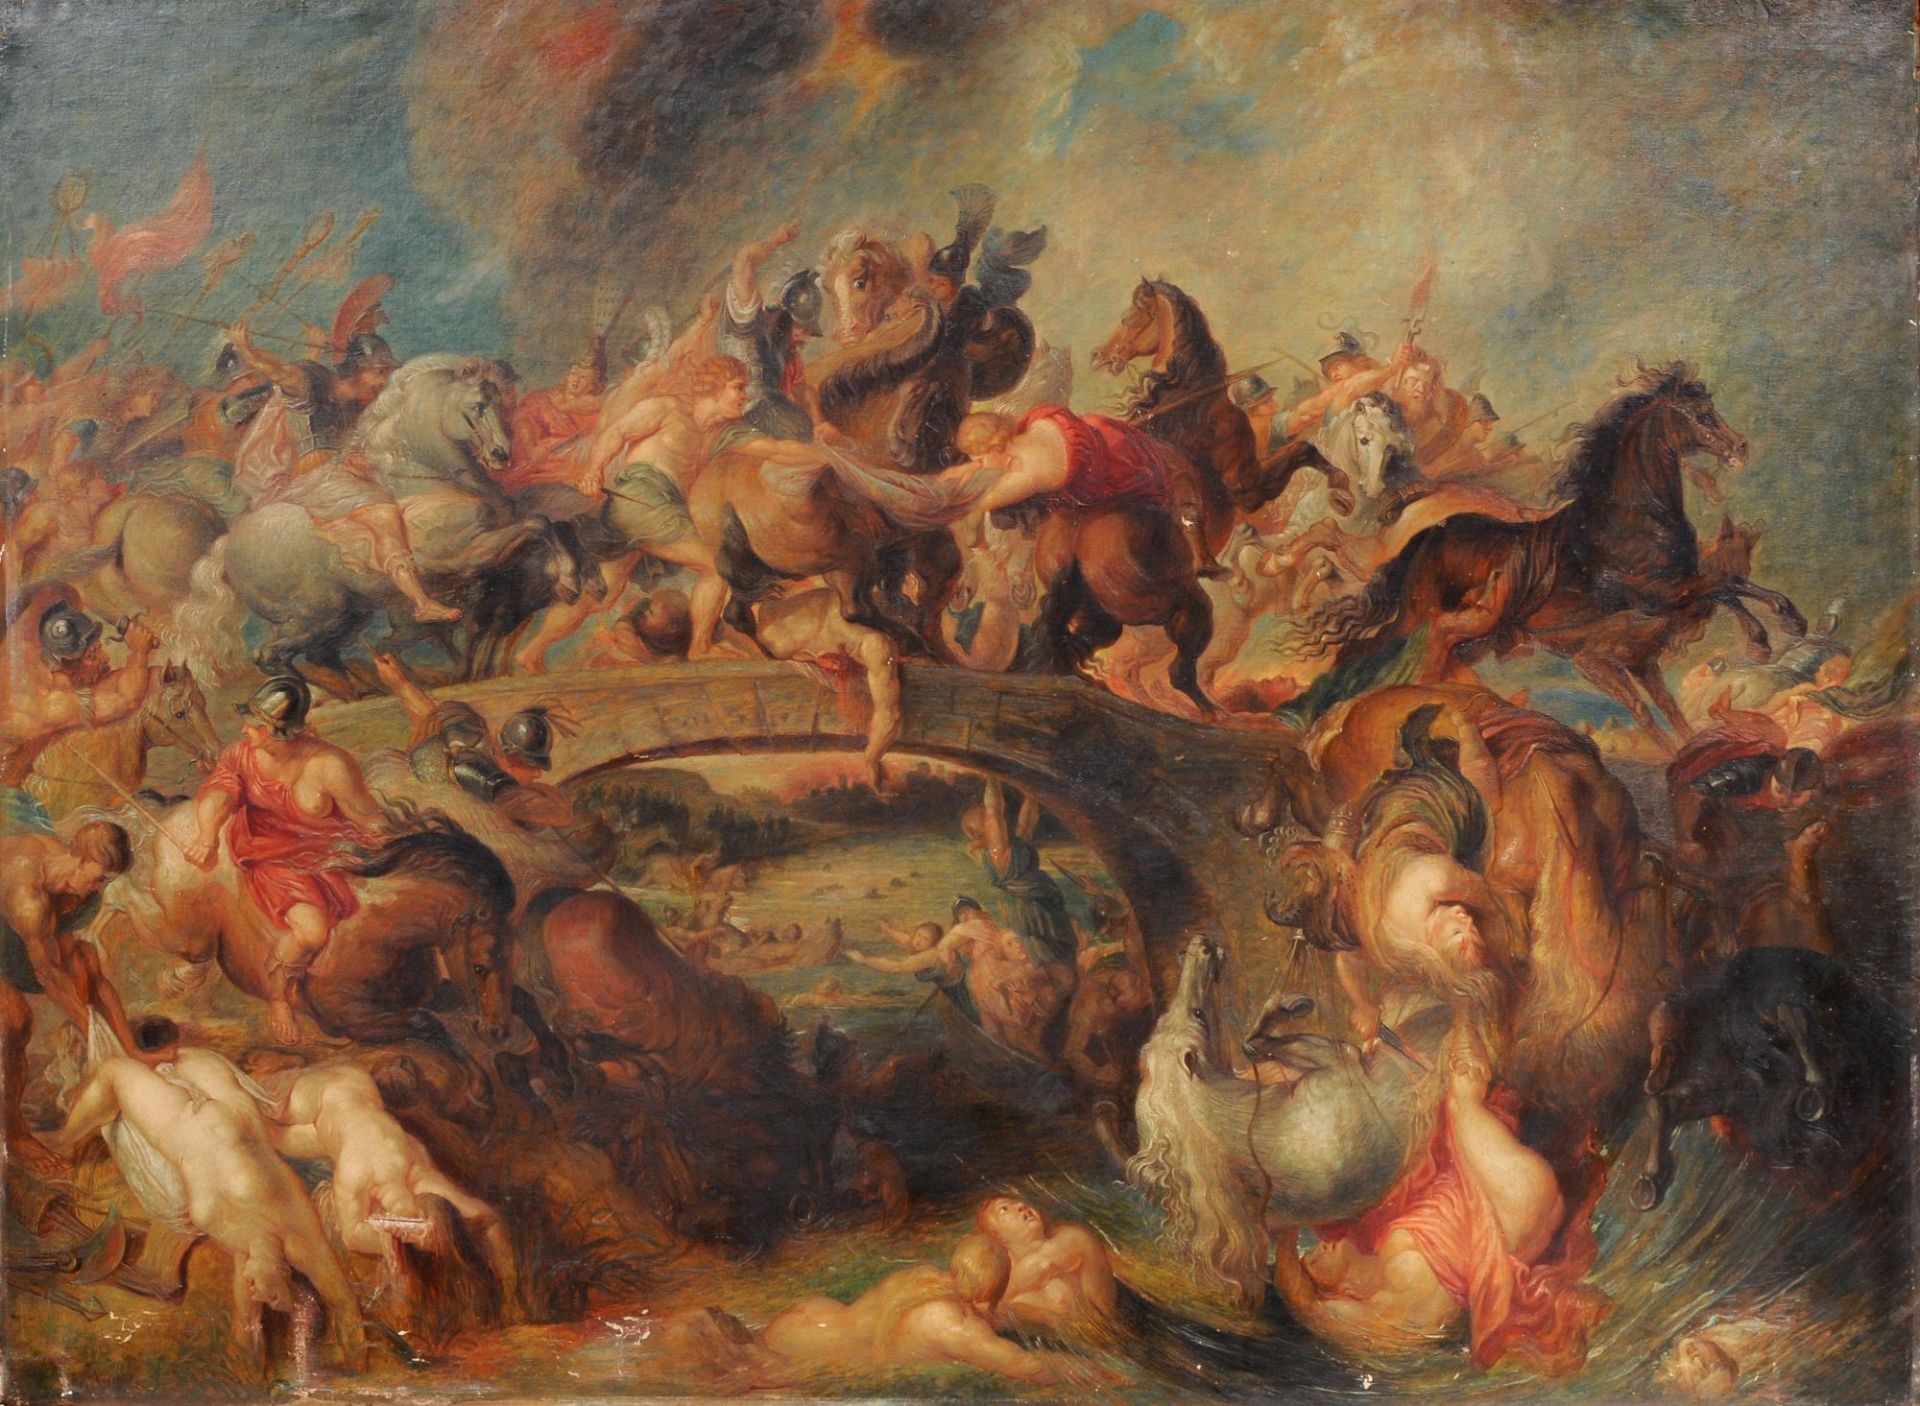 Peter Paul Rubens (Kopie nach) "Amazonenschlacht". Kopie von J. Andres. Spätes 19. Jh.